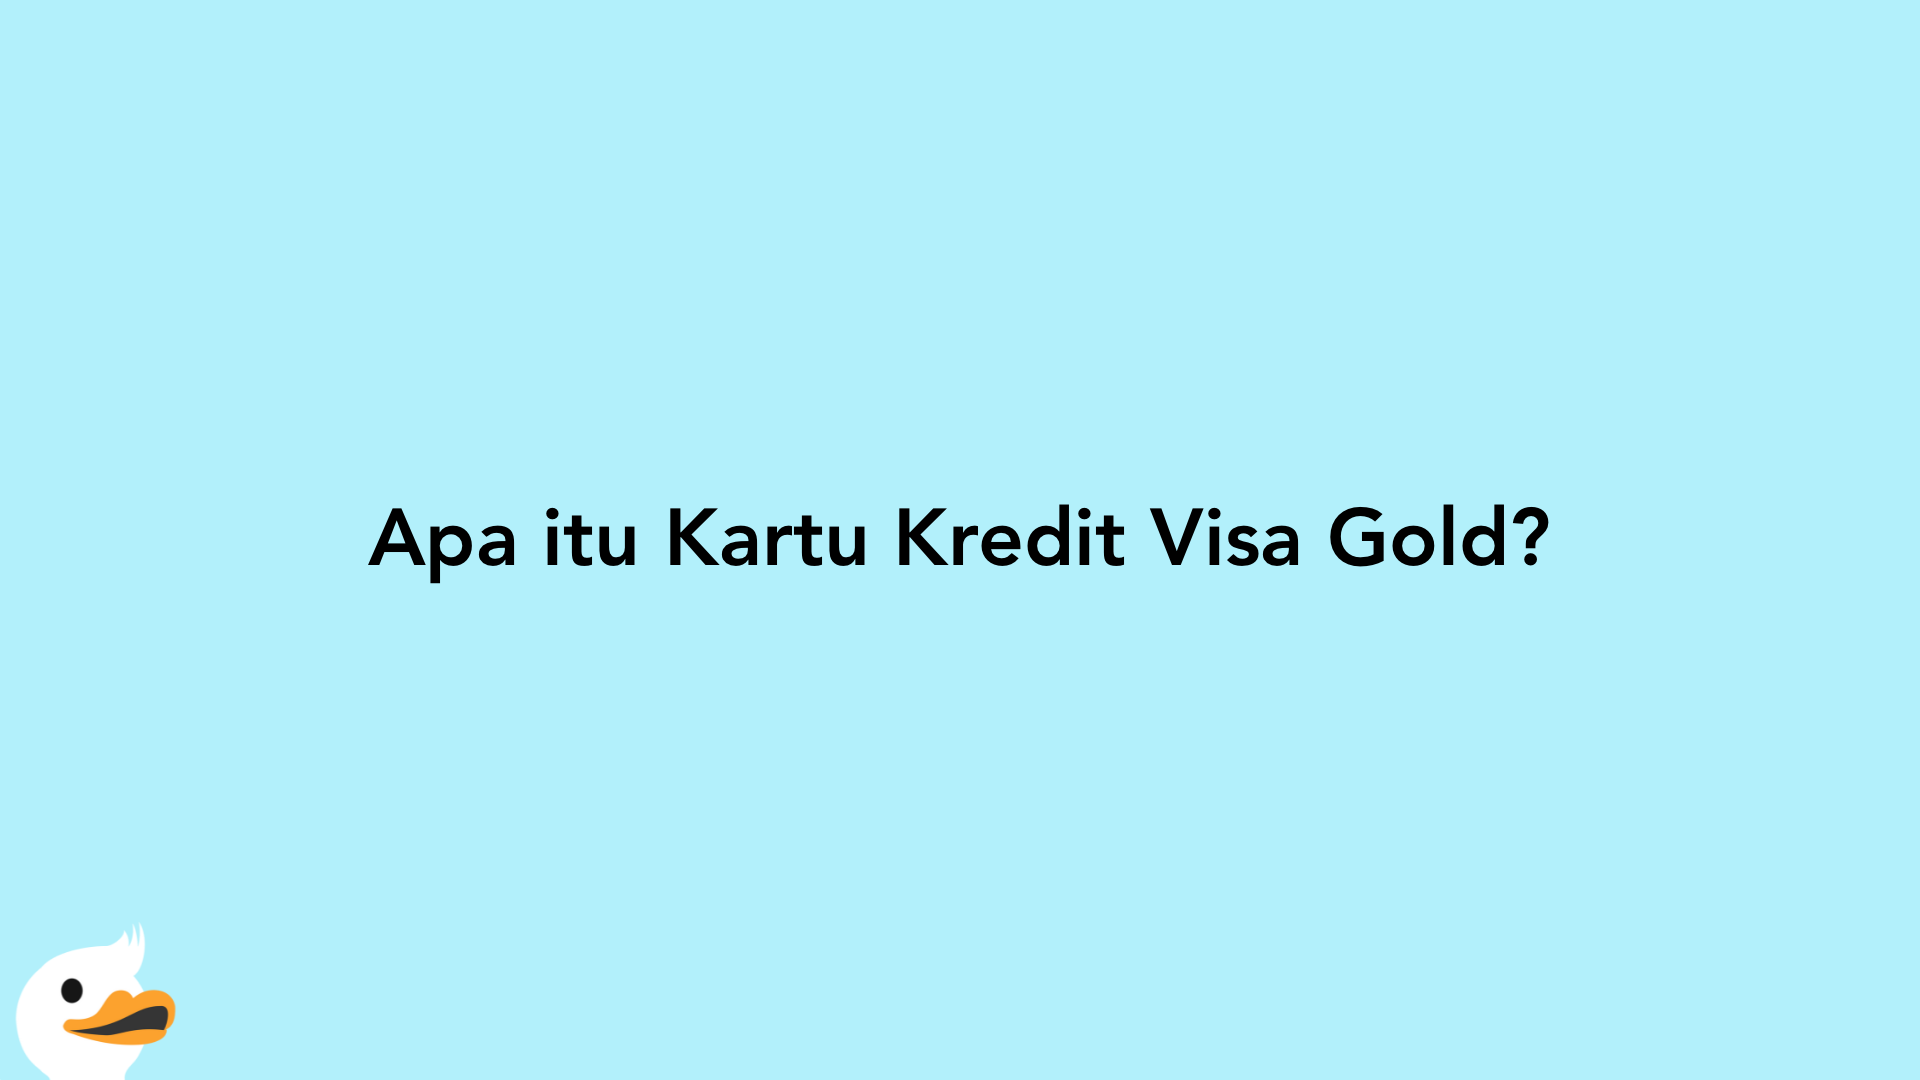 Apa itu Kartu Kredit Visa Gold?